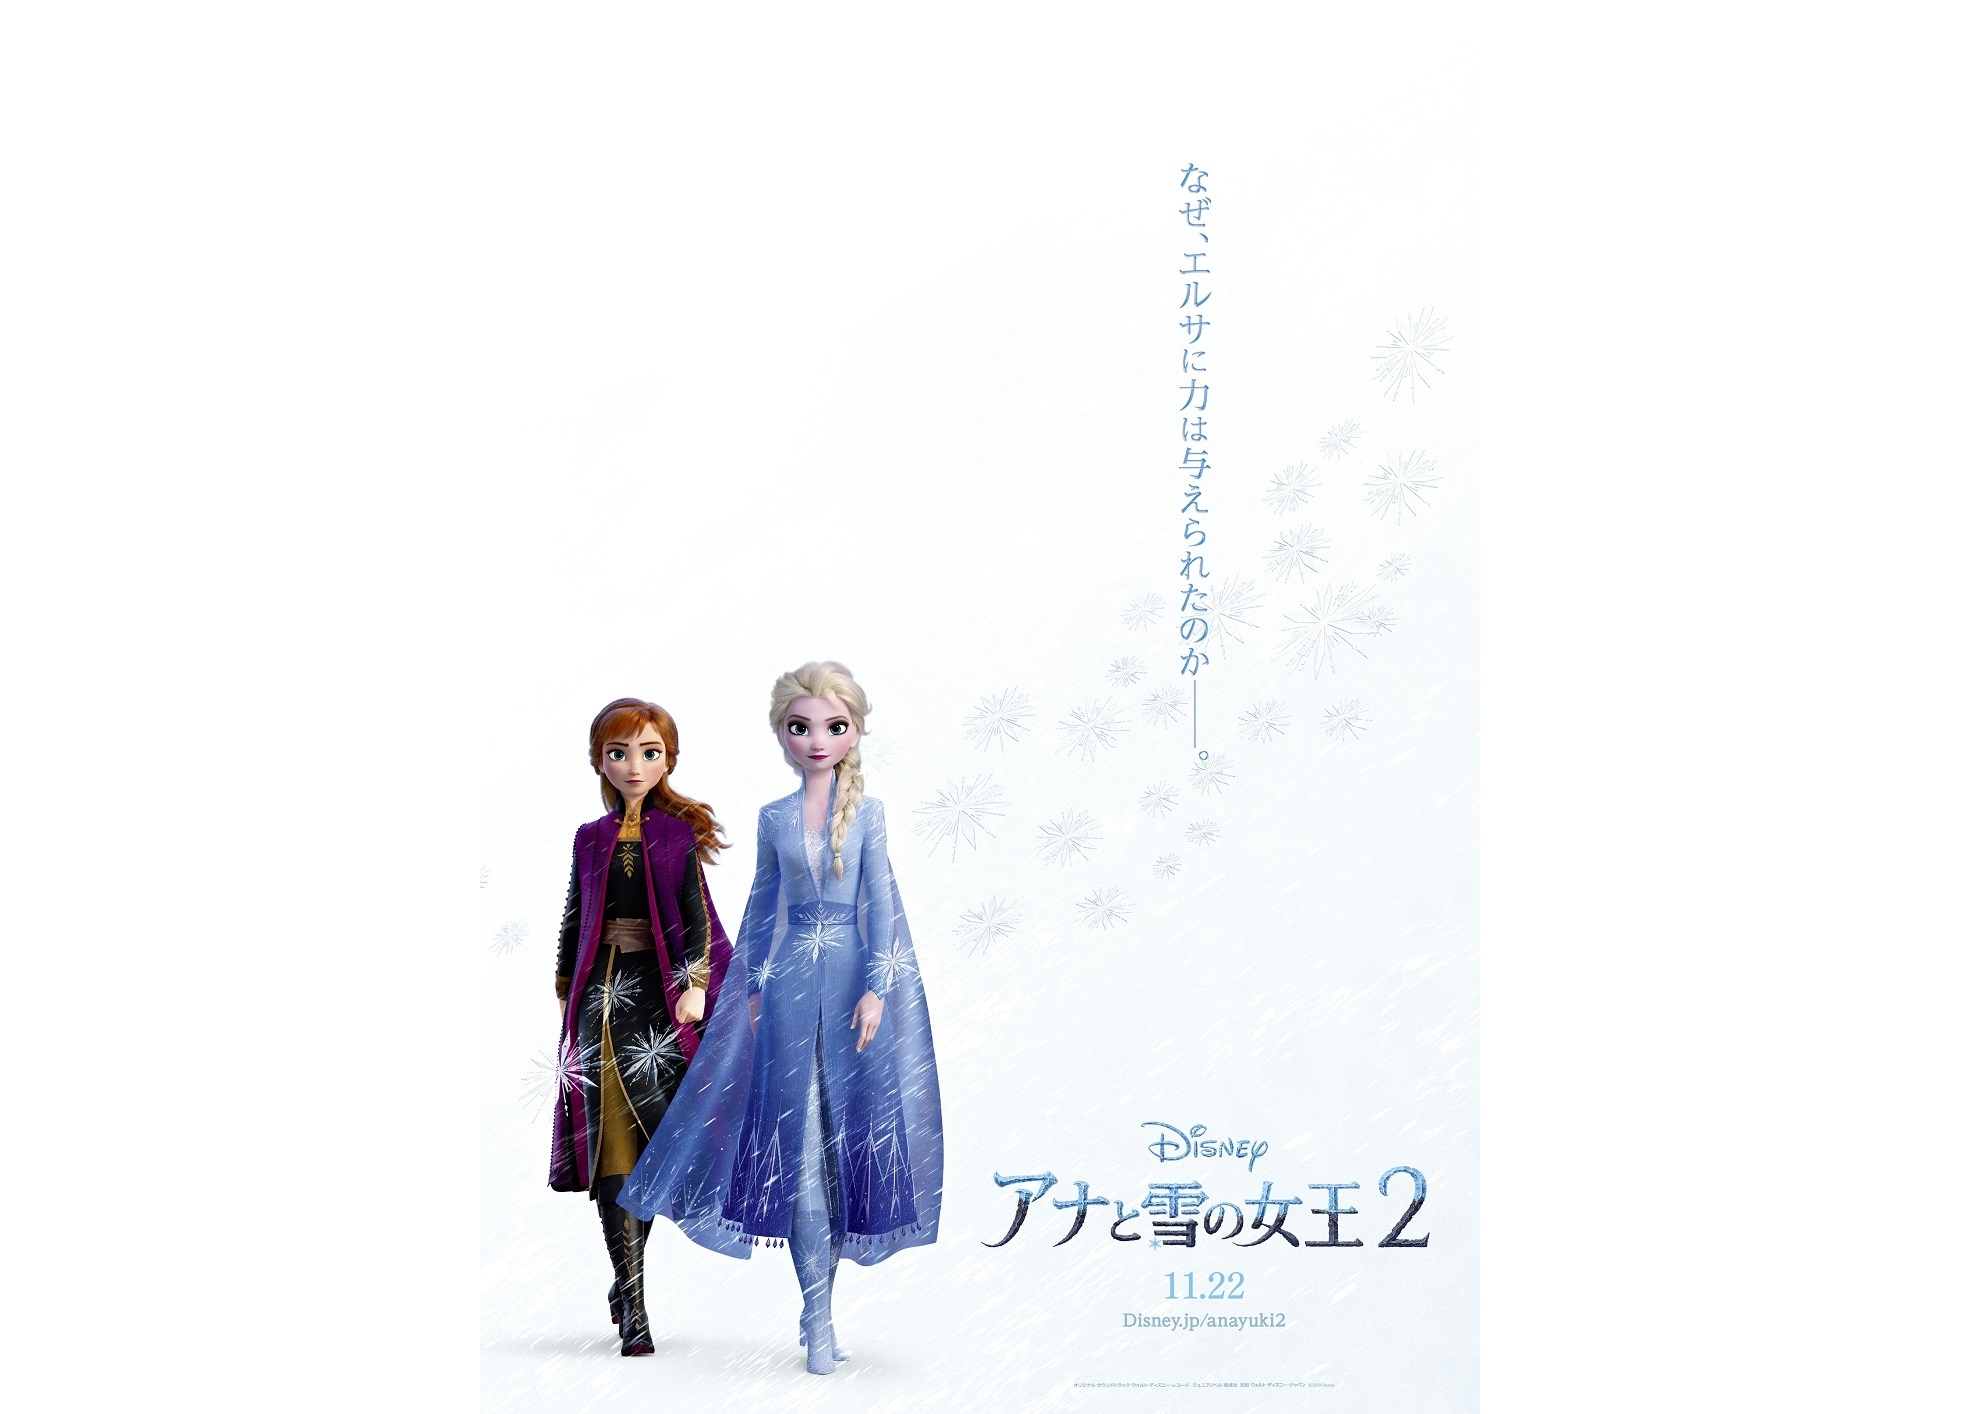 アナと雪の女王2 日本限定ビジュアルポスターが解禁 アニメイトタイムズ